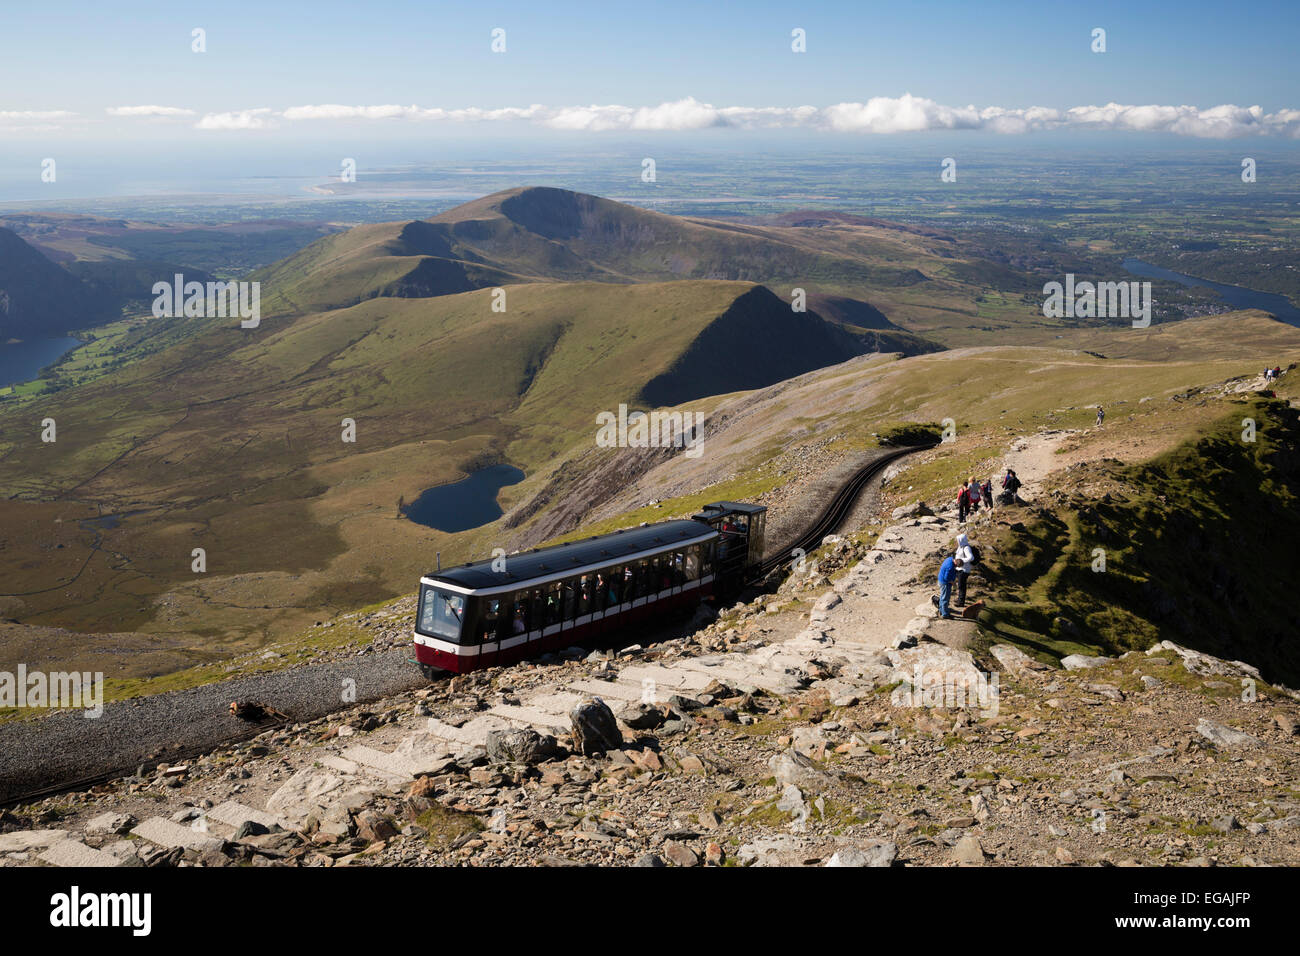 Snowdon Mountain Railway Zug am Gipfel des Snowdon, in der Nähe von Llanberis, Snowdonia-Nationalpark, Gwynedd, Wales; Vereinigtes Königreich Stockfoto